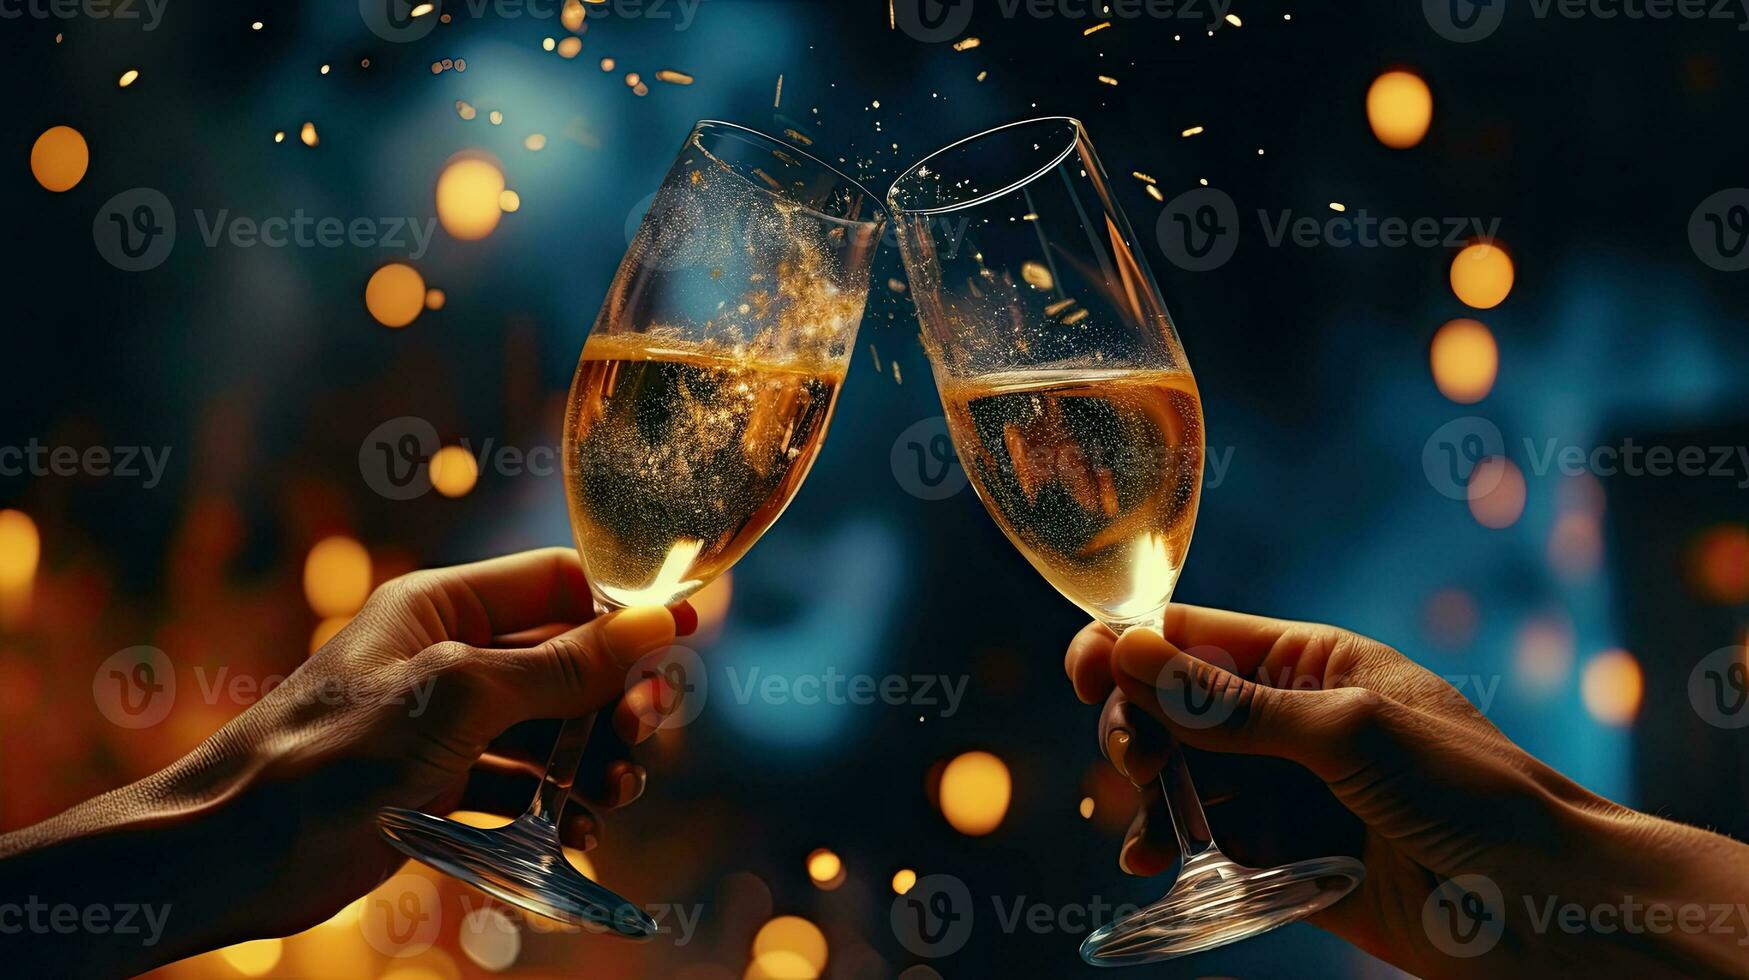 fechar-se dois pessoas comemoro Natal com óculos do champanhe durante uma lindo fogos de artifício mostrar. foto